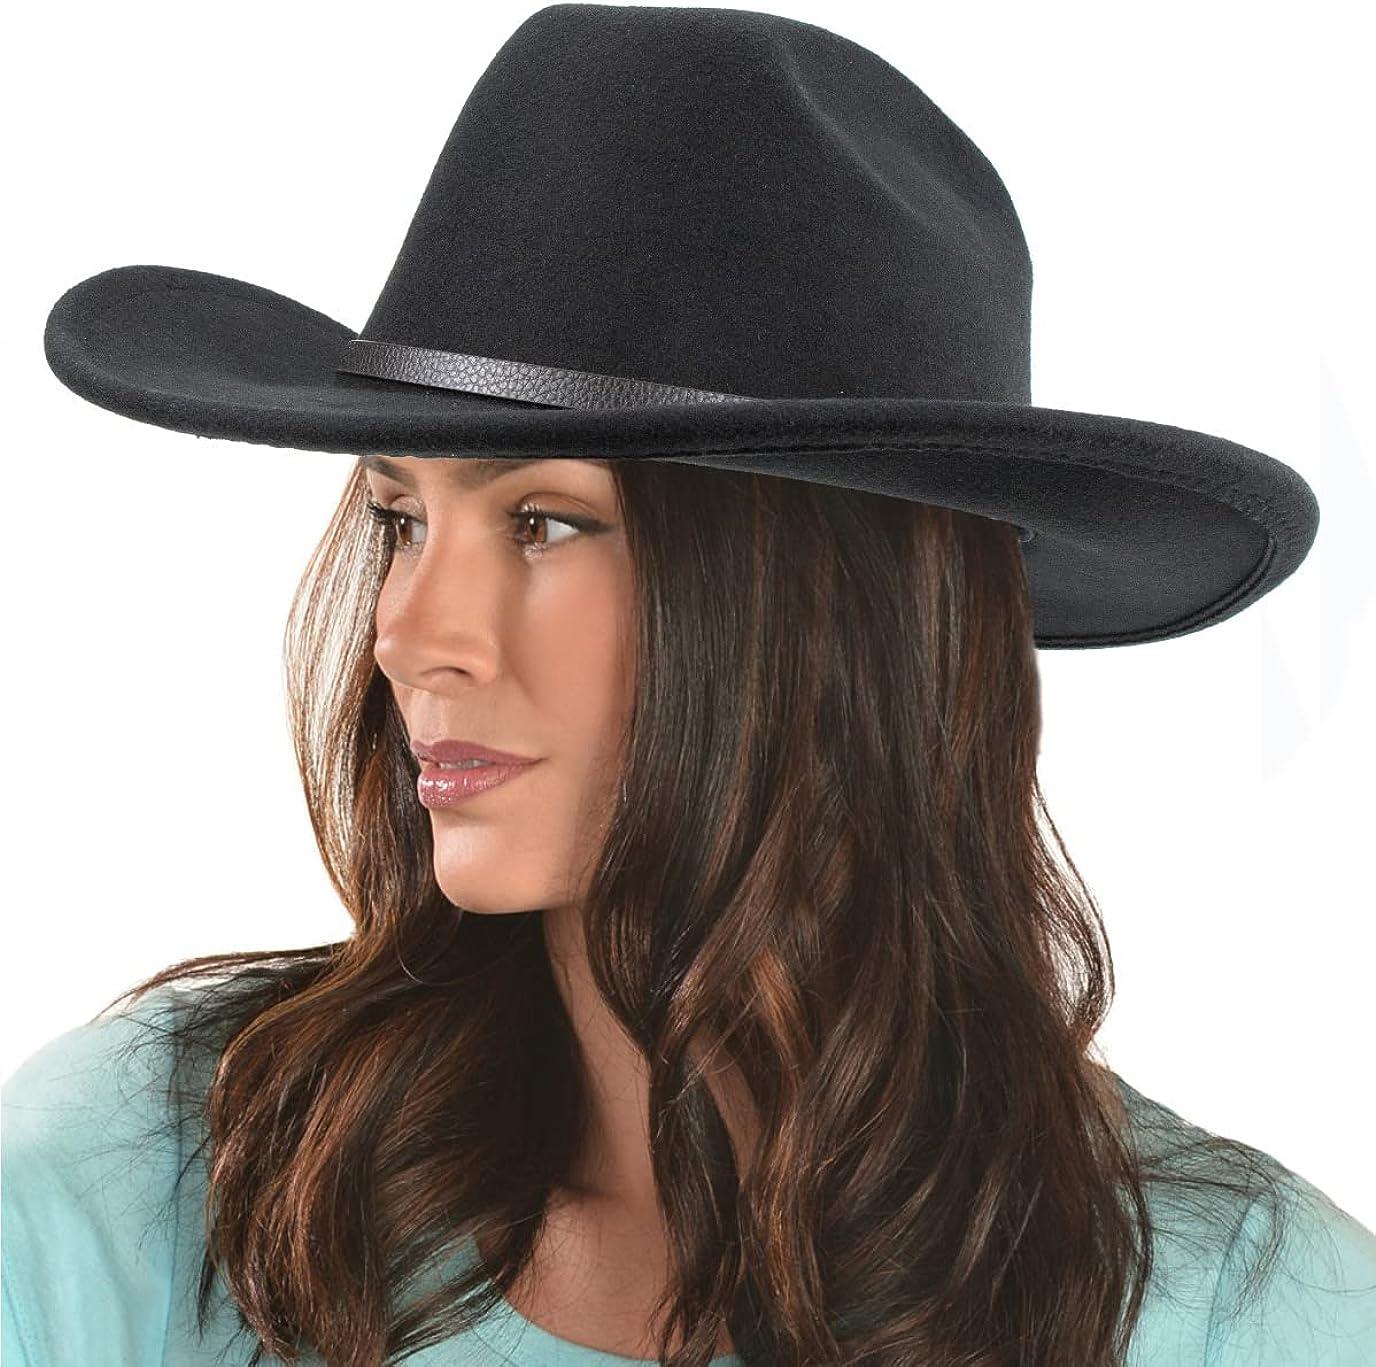 Classic Western Felt Cowboy Cowgirl Hat for Women Men Big Wide